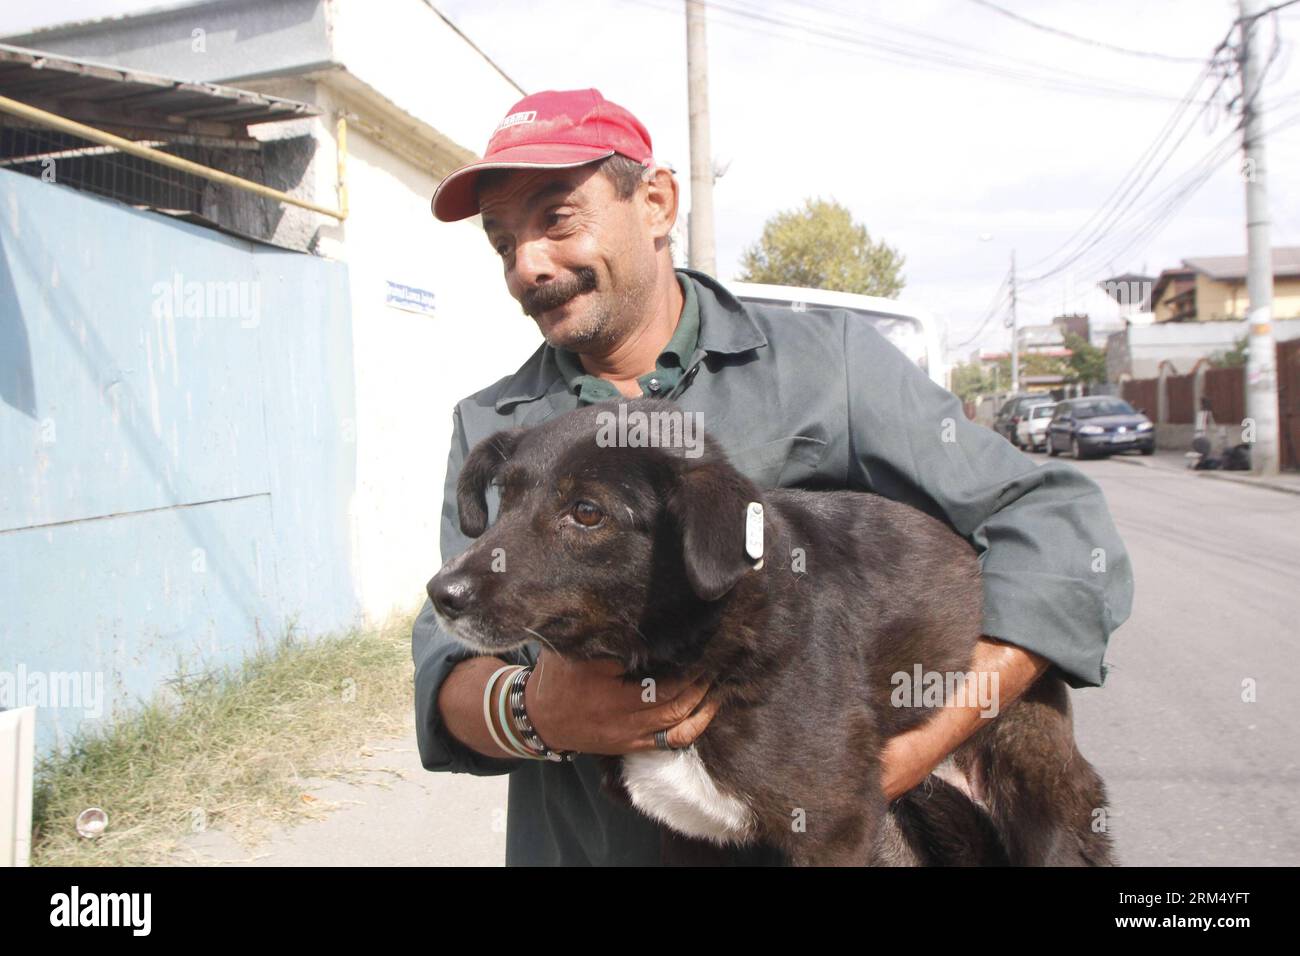 Bildnummer : 60535269 Datum : 27.09.2013 Copyright : imago/Xinhua (130927) -- BUCAREST, 27 septembre 2013 (Xinhua) -- Un homme tient un chien errant qu'il a adopté dans un refuge appartenant à l'État, après que la loi autorisant l'euthanasie des chiens errants a été adoptée le 25 septembre, à Bucarest, capitale de la Roumanie, le 27 septembre 2013. (Xinhua/Gabriel Petrescu) ROUMANIE-BUCAREST-CHIENS ERRANTS-ADOPTION PUBLICATIONxNOTxINxCHN Gesellschaft Tierheim Hunde Streuner Tierlieb xdp x0x 2013 quer 60535269 Date 27 09 2013 Copyright Imago XINHUA Bucarest sept 27 2013 XINHUA un homme tient un chien errant qu'il a adopté du Shel appartenant à l'État Banque D'Images